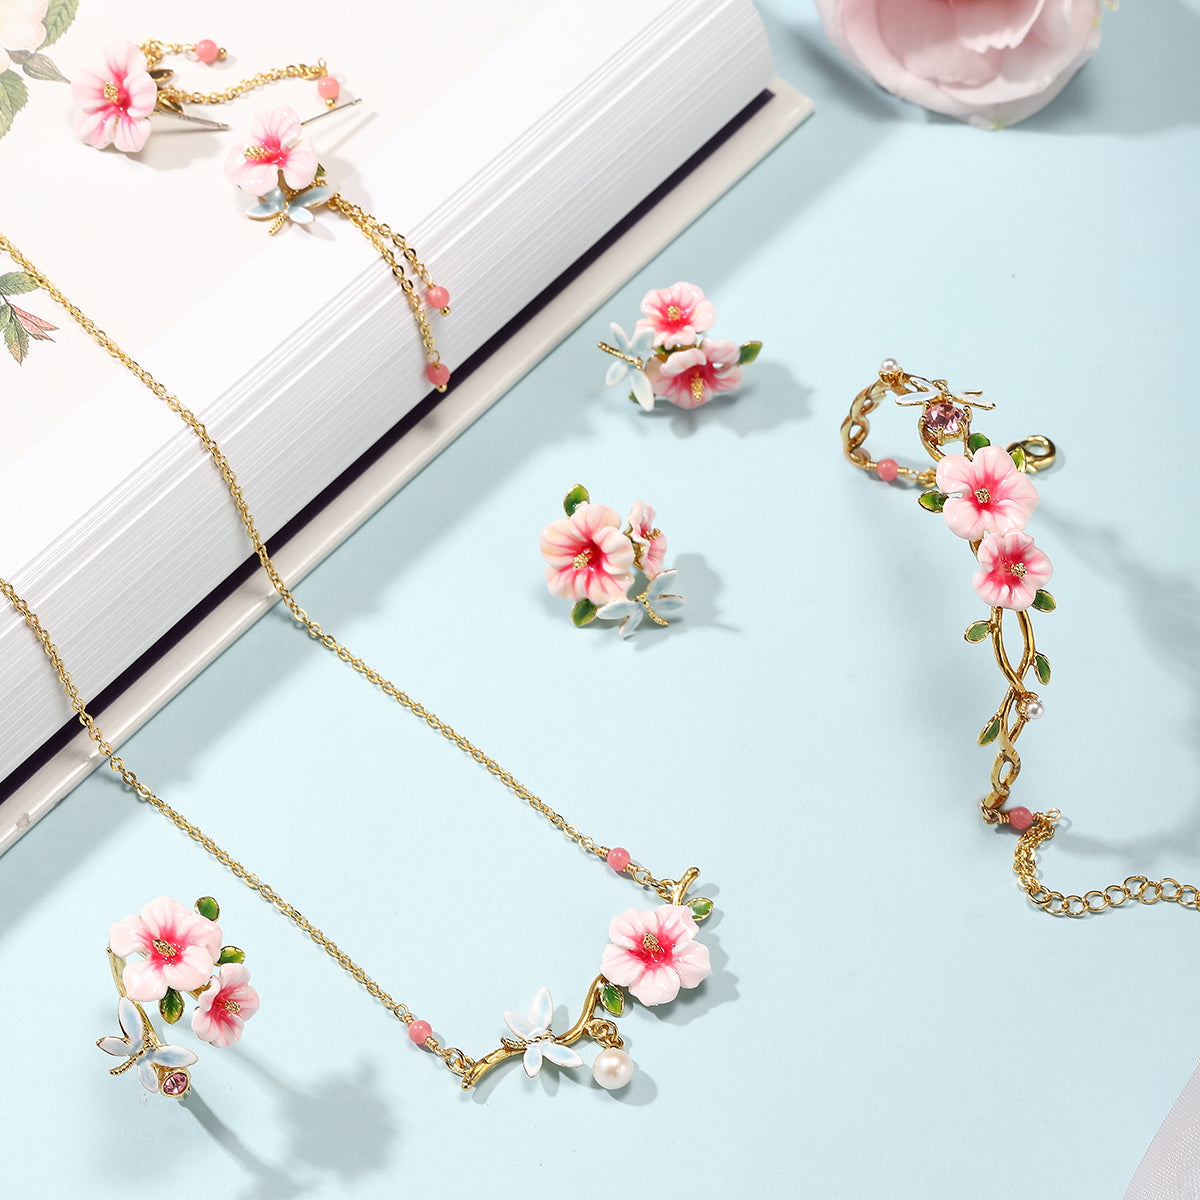 hibiscus enamel jewelry set